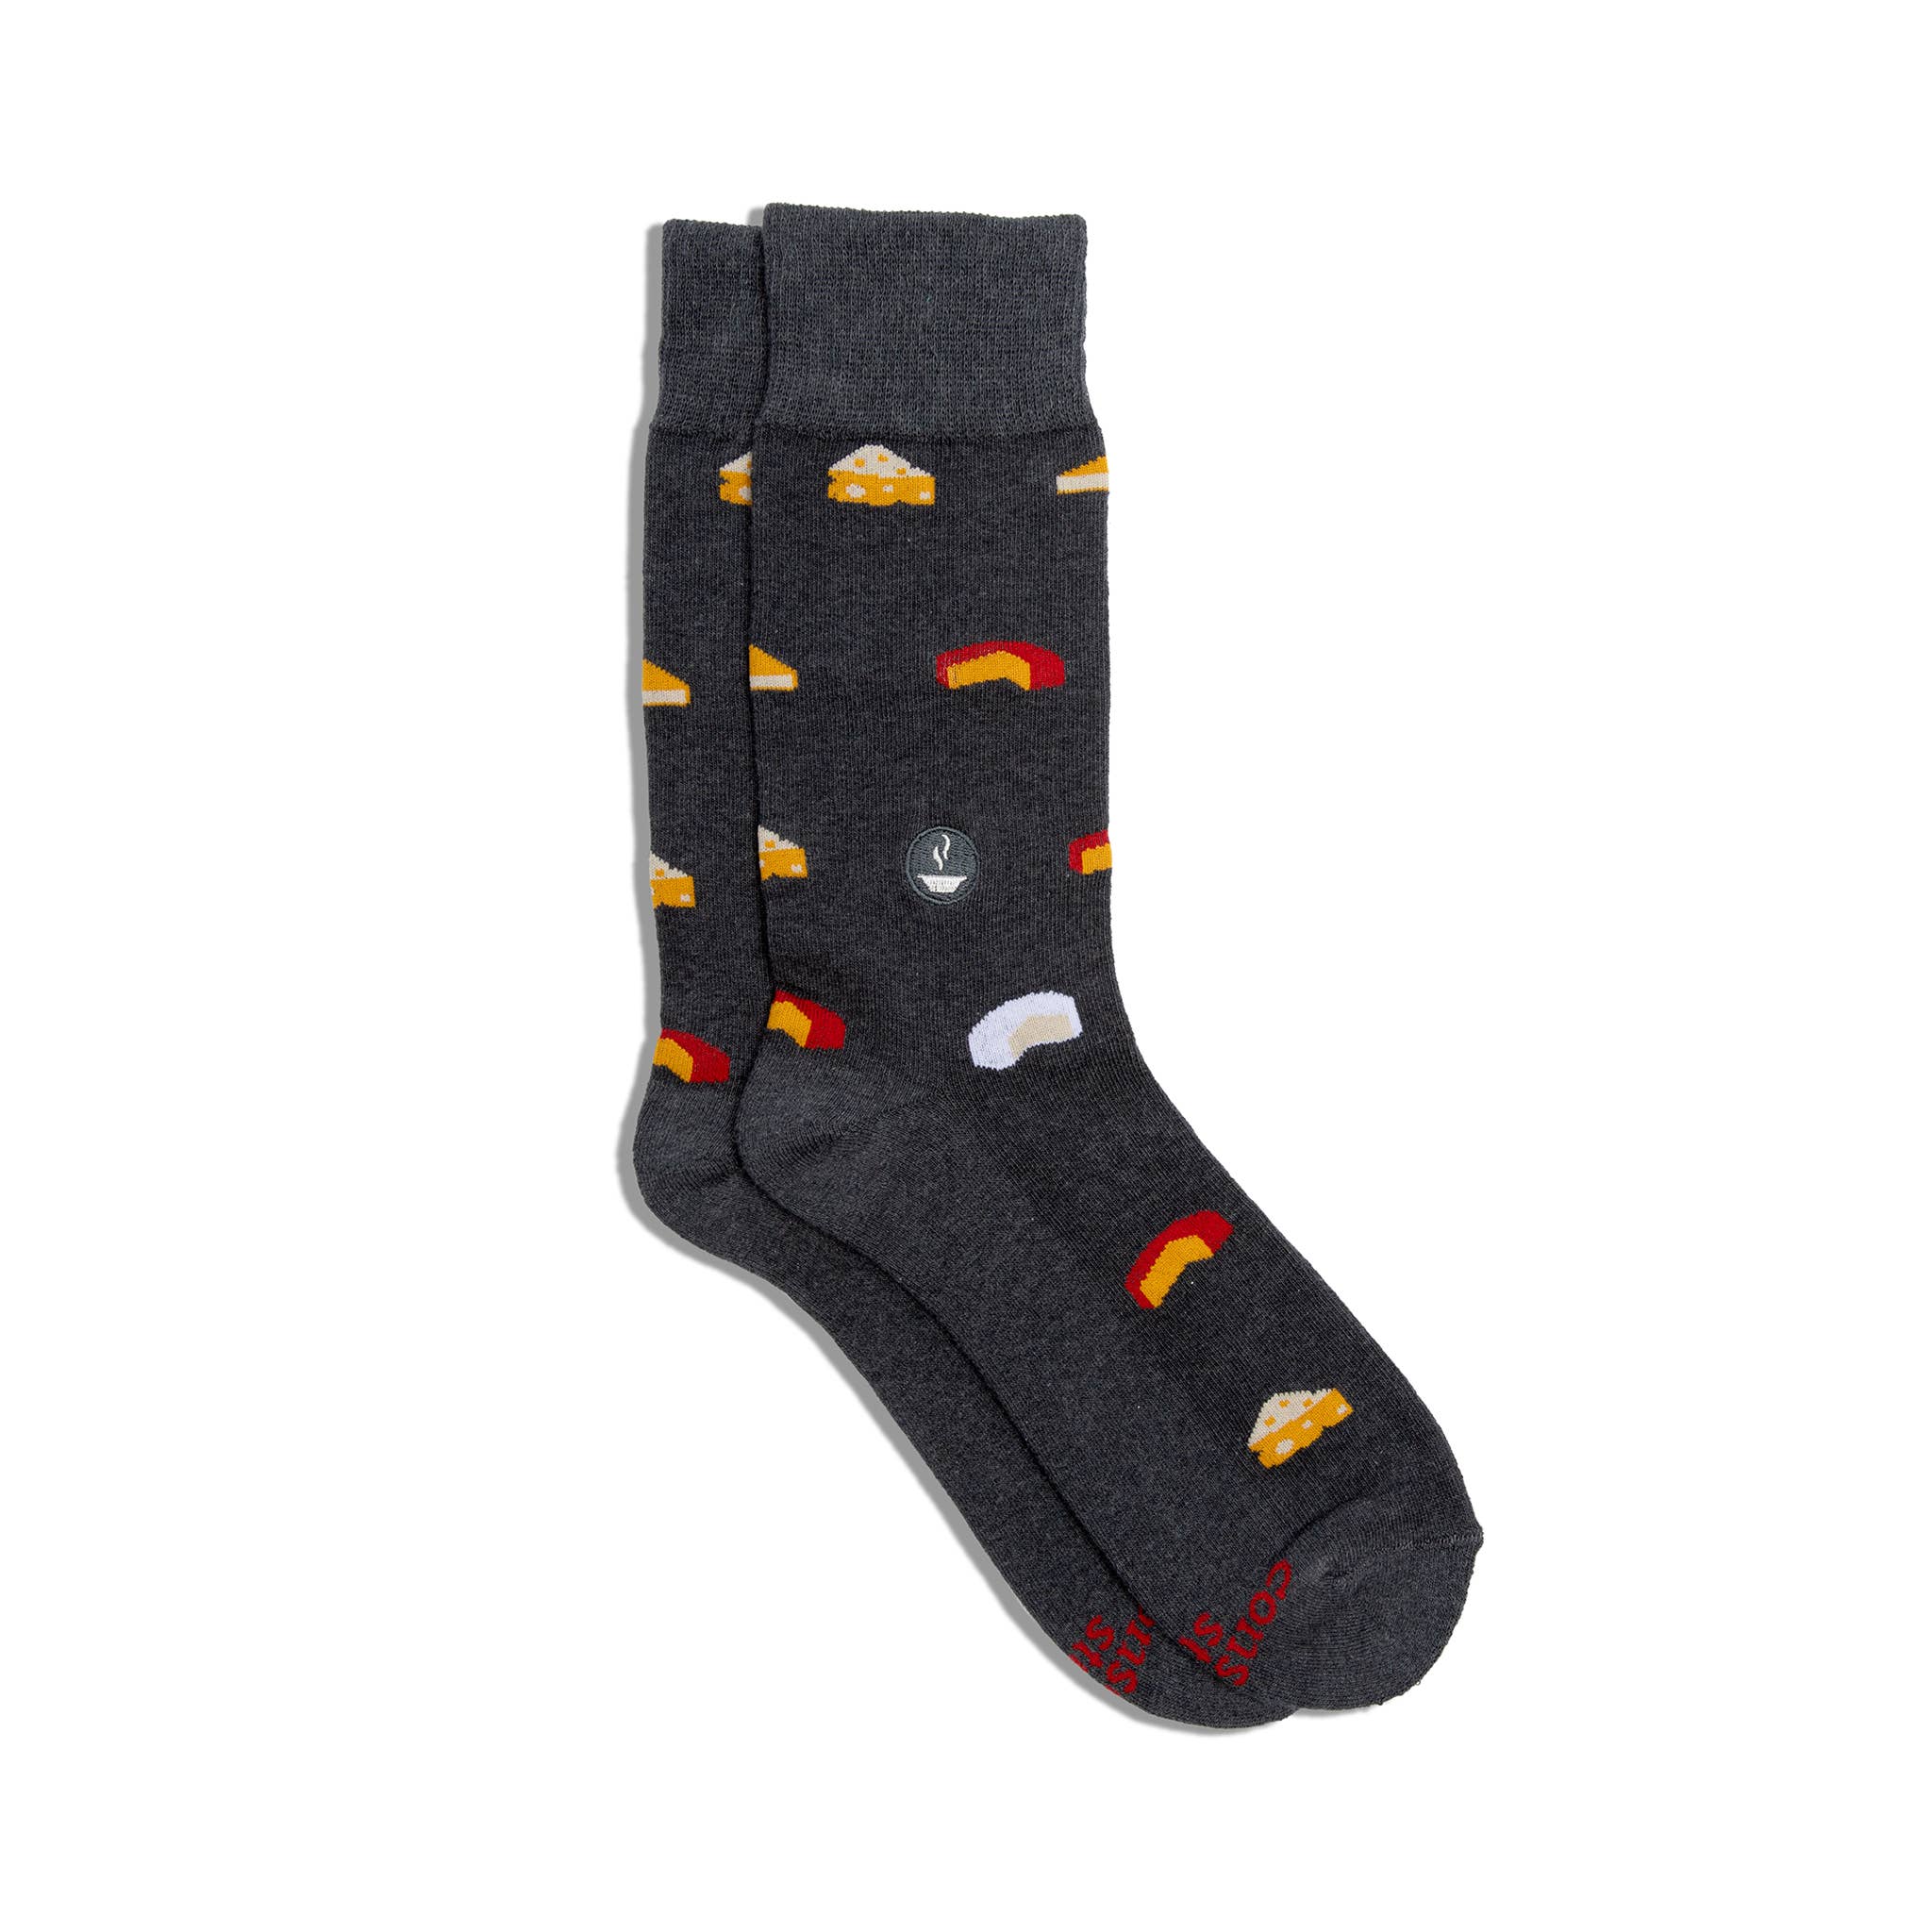 Cheese Socks that Provide Meals - Men's Socks